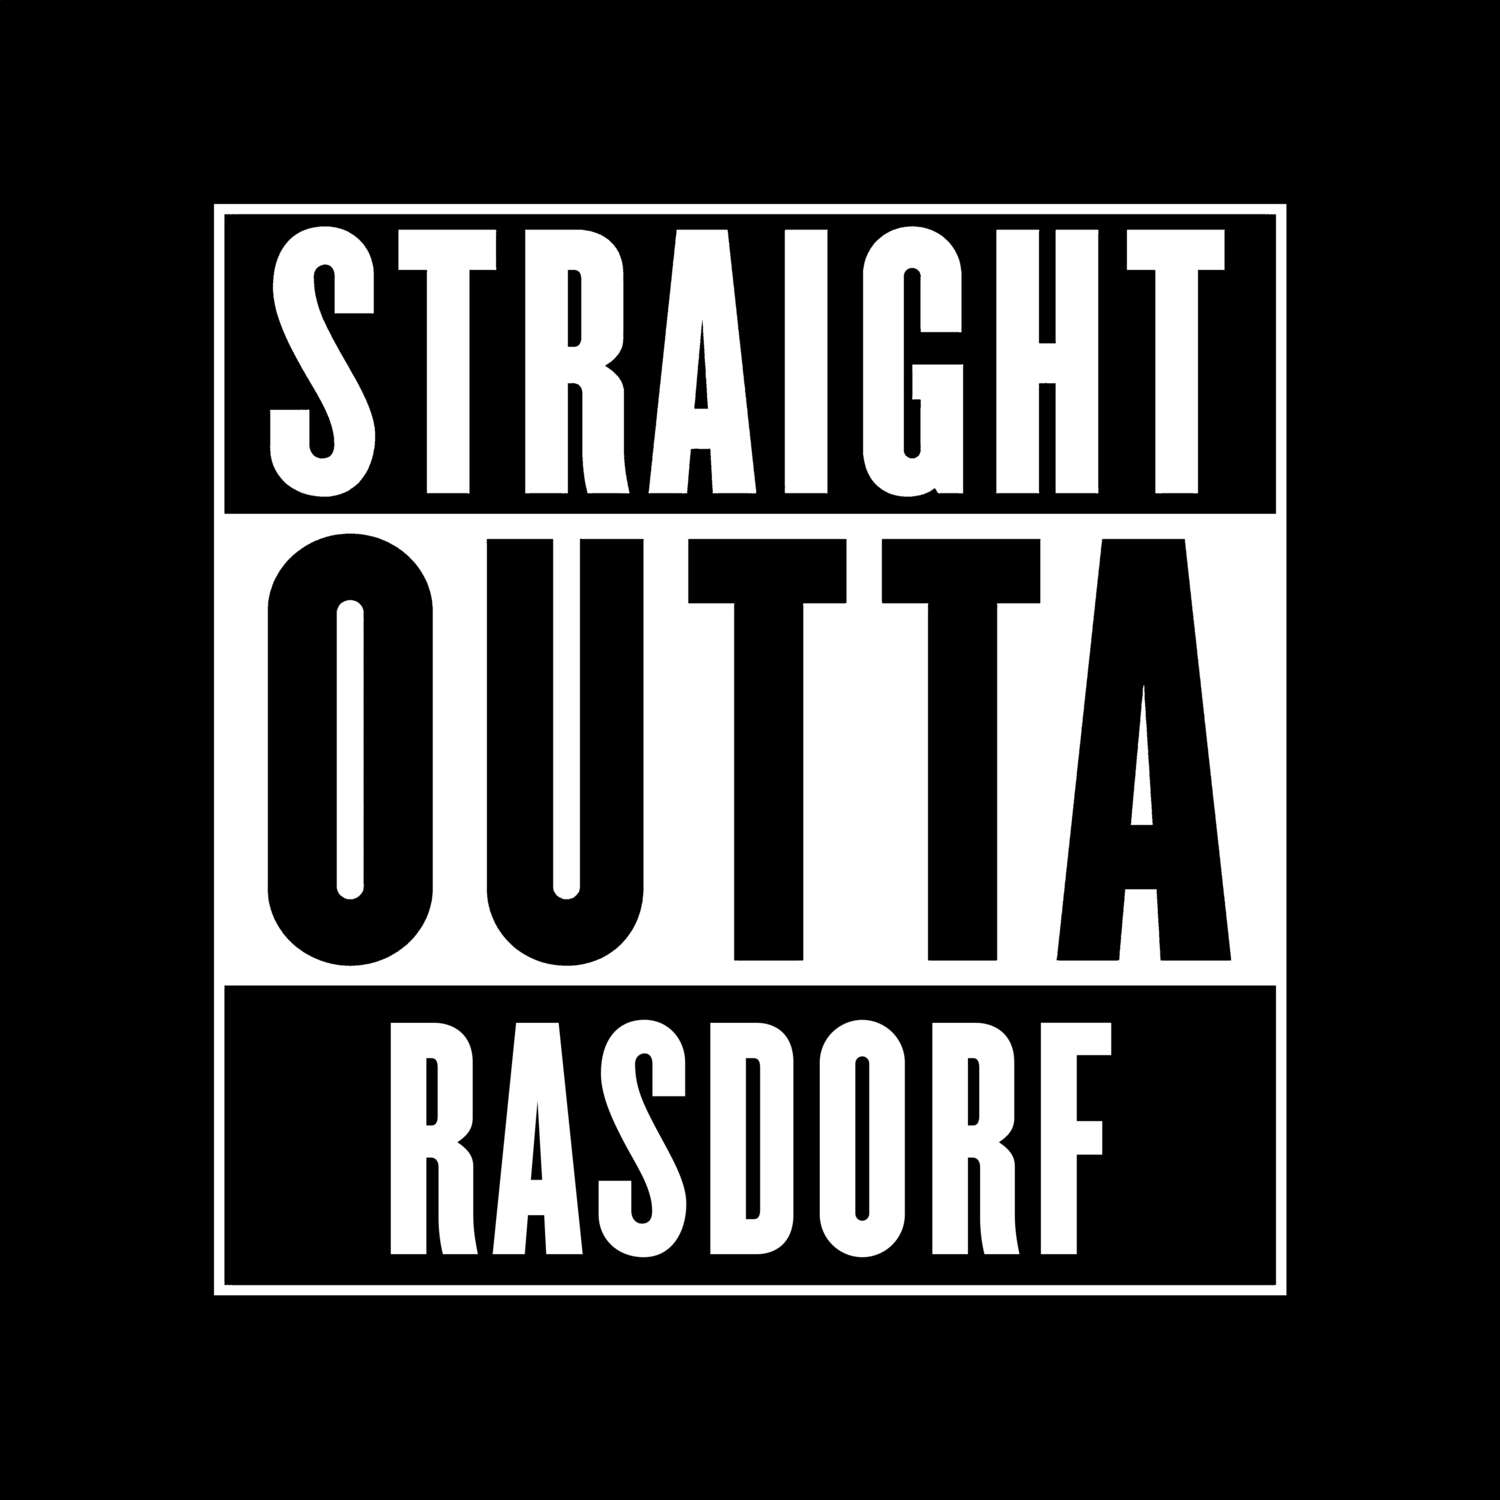 Rasdorf T-Shirt »Straight Outta«